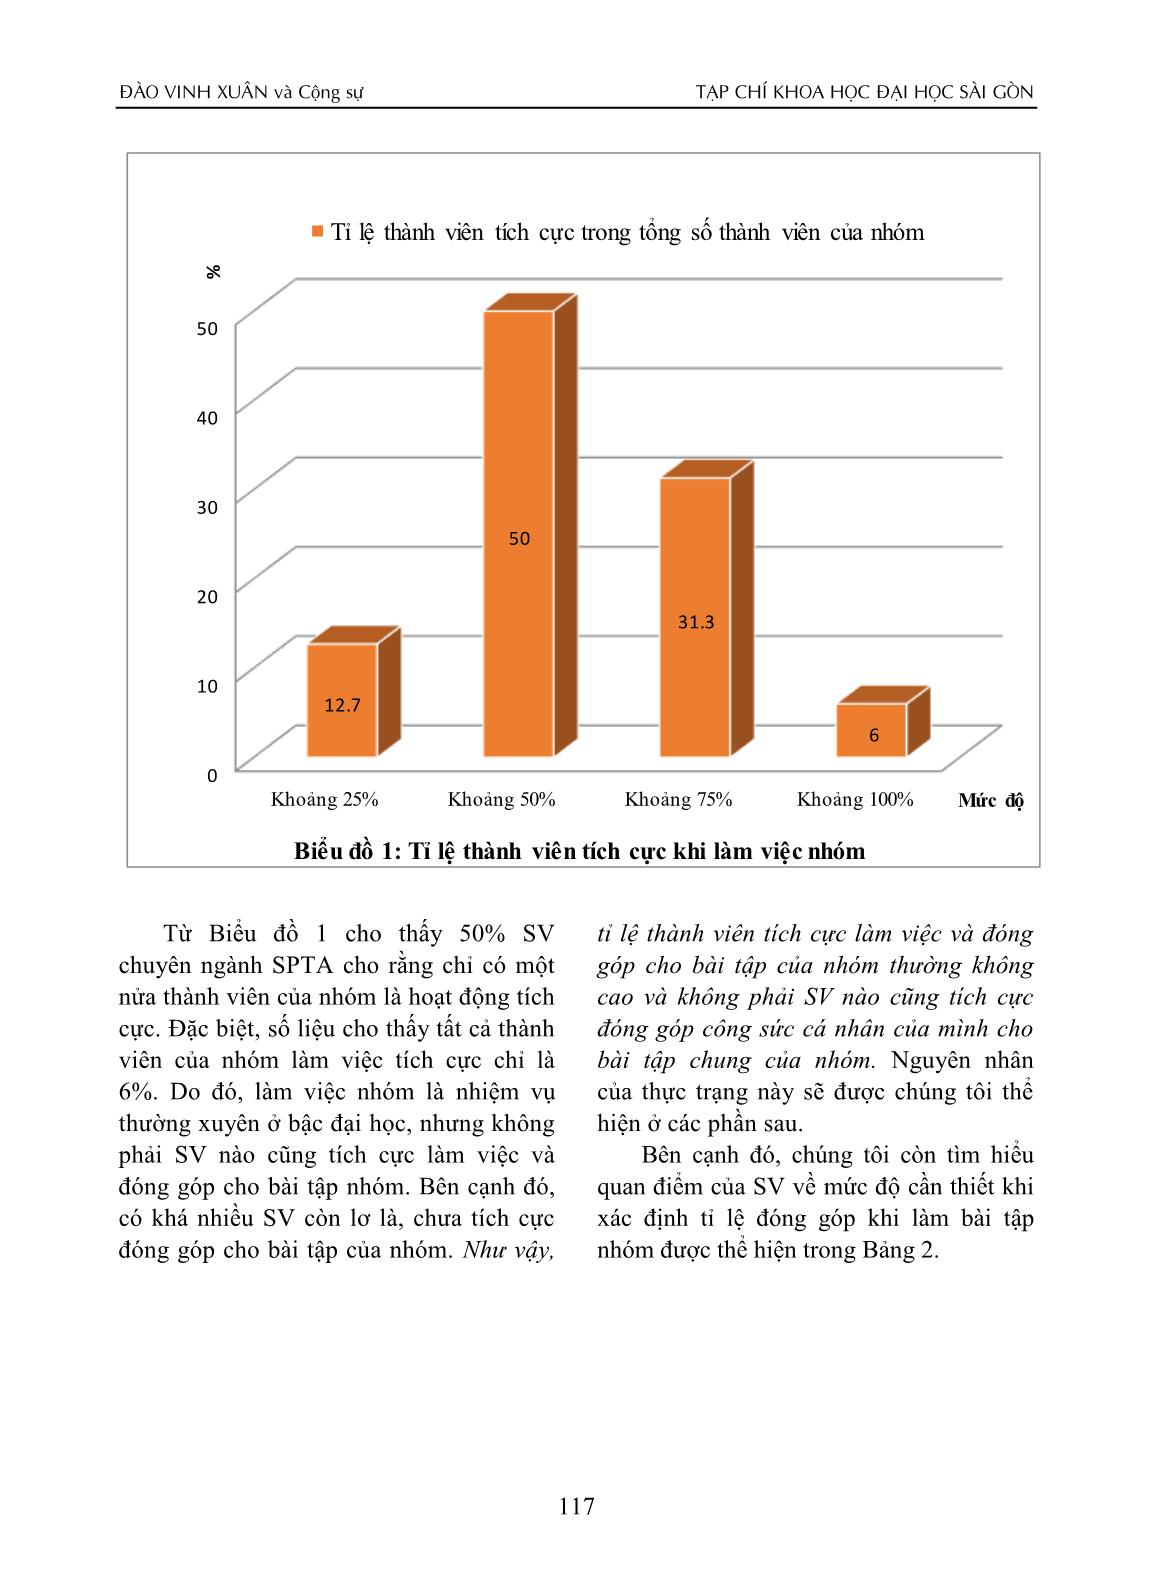 Thực trạng xác định tỉ lệ đóng góp khi làm bài tập nhóm của sinh viên chuyên ngành sư phạm Tiếng Anh trang 4